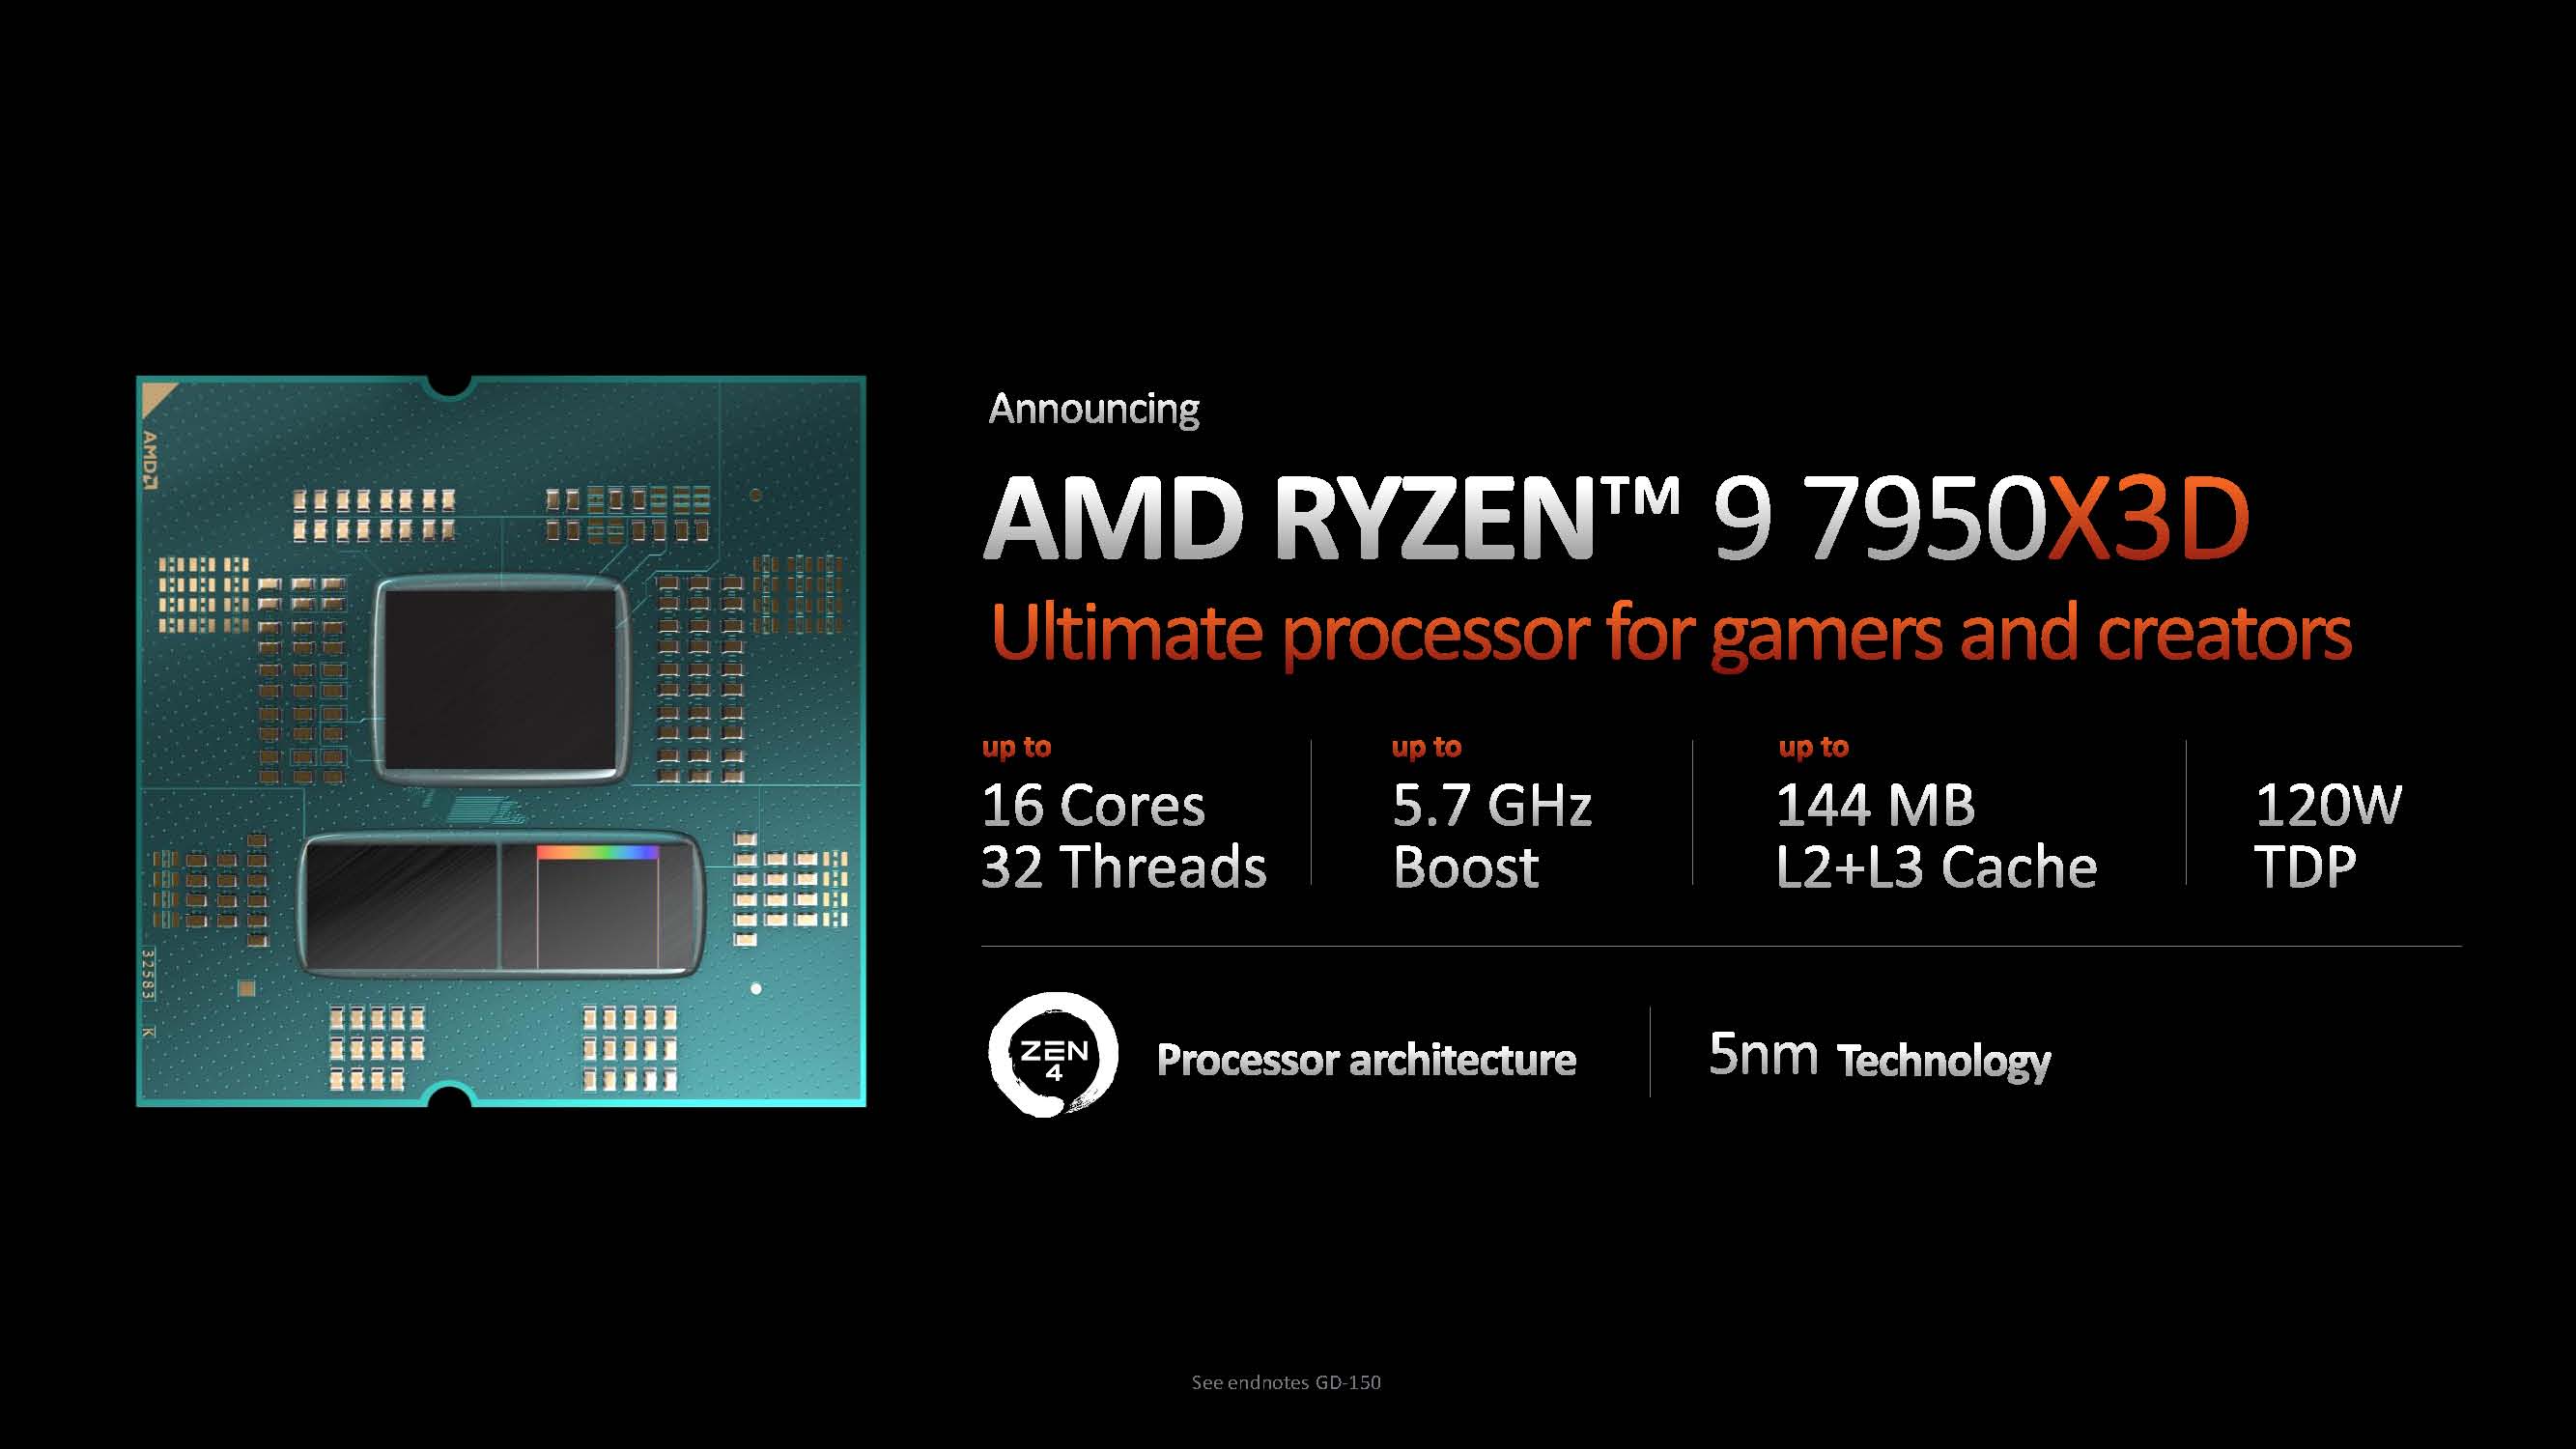 AMD Ryzen 9 7900X3D - 5.6GHz - Processeur AMD 